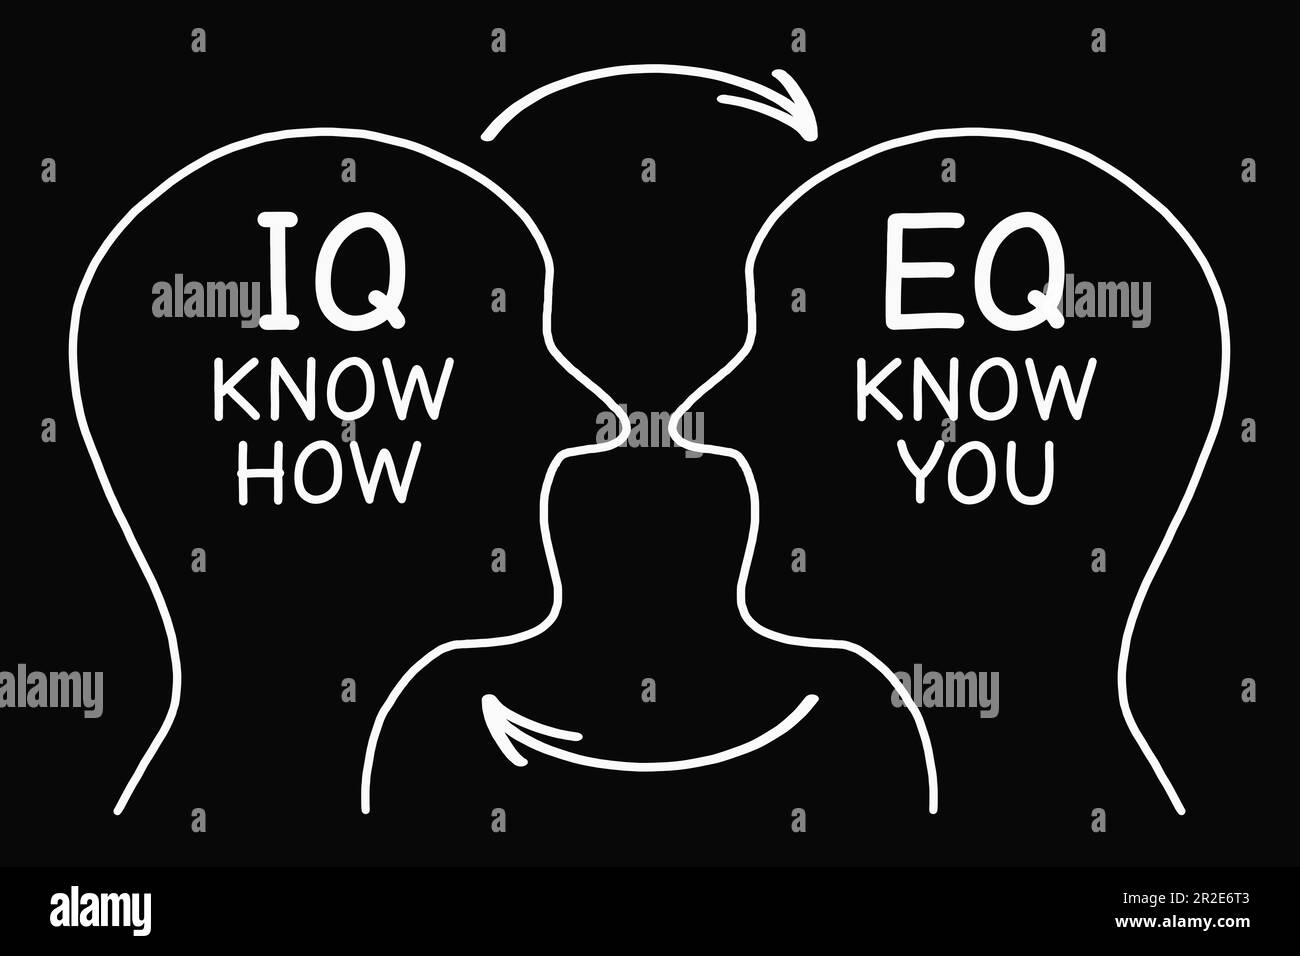 Illustrazione concettuale di IQ Intelligence Quotient e EQ Emotional Intelligence Quotient su sfondo nero. Foto Stock